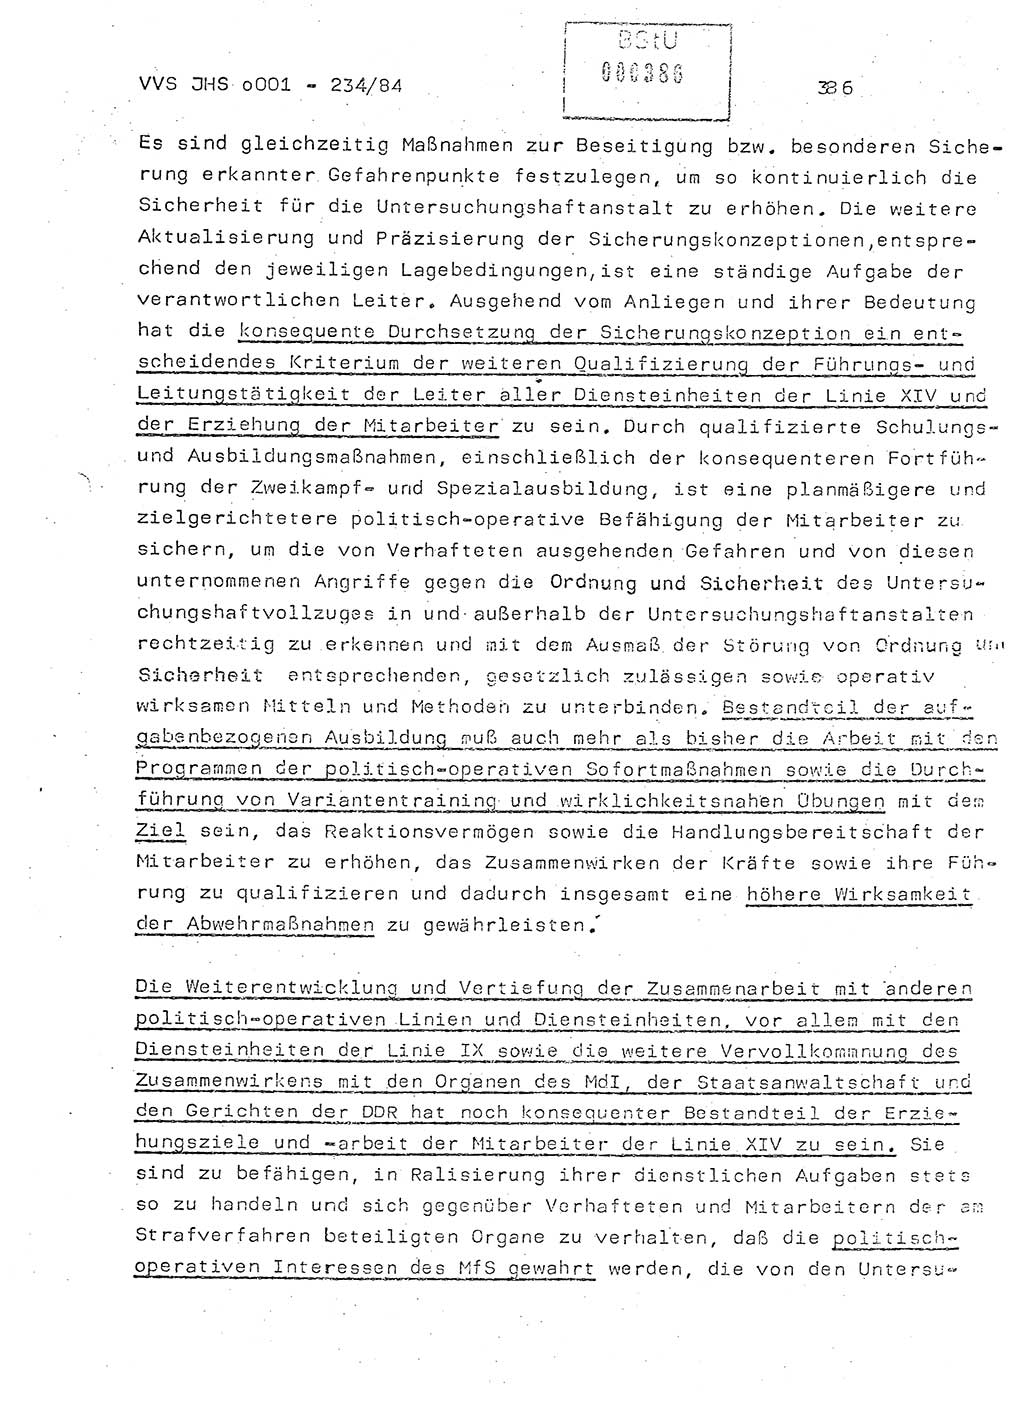 Dissertation Oberst Siegfried Rataizick (Abt. ⅩⅣ), Oberstleutnant Volkmar Heinz (Abt. ⅩⅣ), Oberstleutnant Werner Stein (HA Ⅸ), Hauptmann Heinz Conrad (JHS), Ministerium für Staatssicherheit (MfS) [Deutsche Demokratische Republik (DDR)], Juristische Hochschule (JHS), Vertrauliche Verschlußsache (VVS) o001-234/84, Potsdam 1984, Seite 386 (Diss. MfS DDR JHS VVS o001-234/84 1984, S. 386)